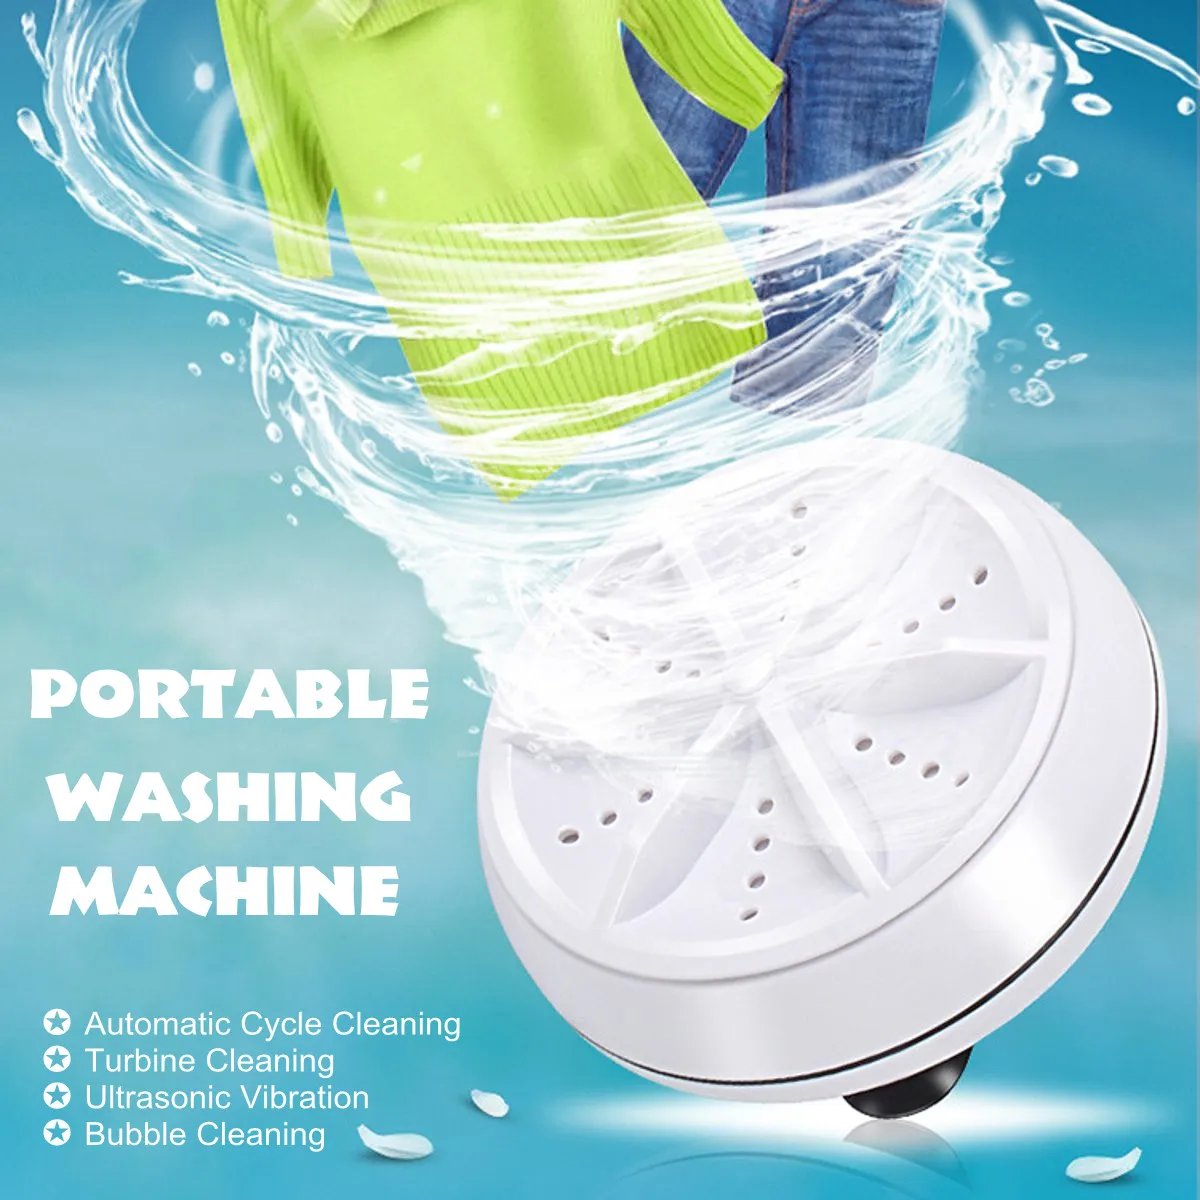 

Мини ультразвуковая стиральная машина портативная турбо персональная вращающаяся стиральная машина удобная для путешествий дома бизнеса ...